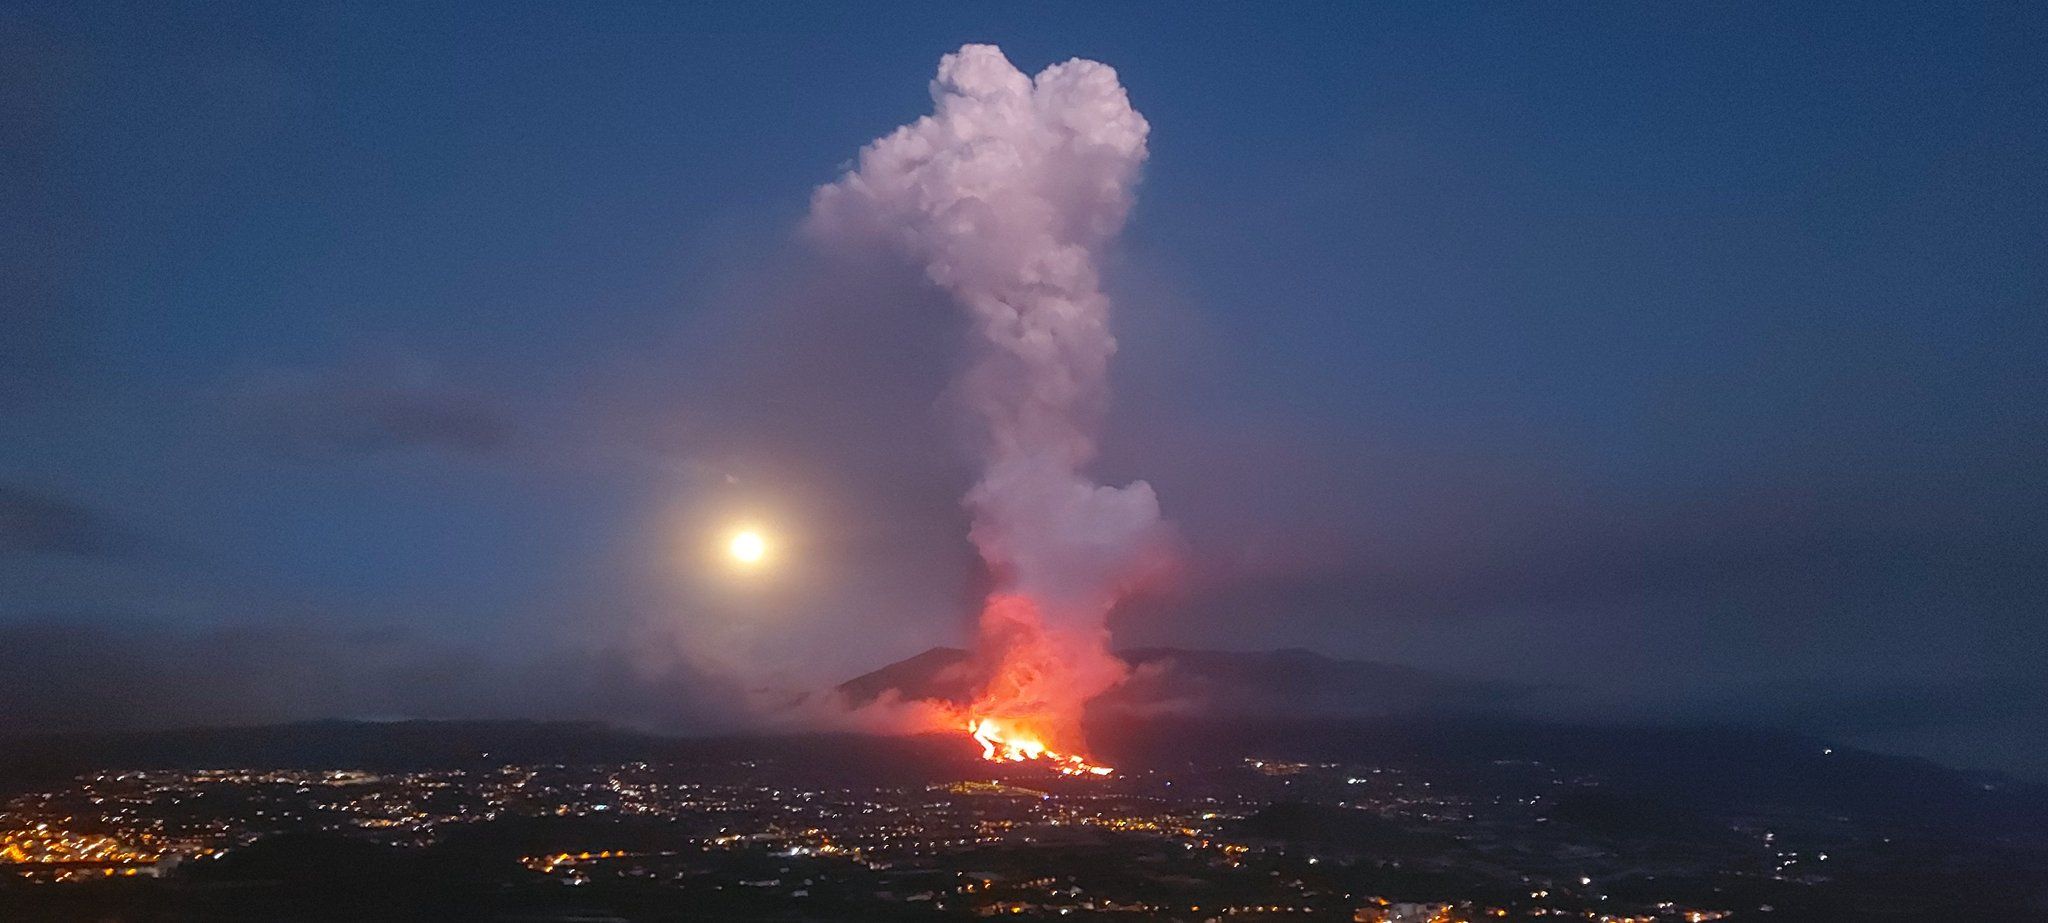 7 claves sobre el volcán de La Palma para extinguir los bulos: "No, los bomberos no pueden apagarlo"